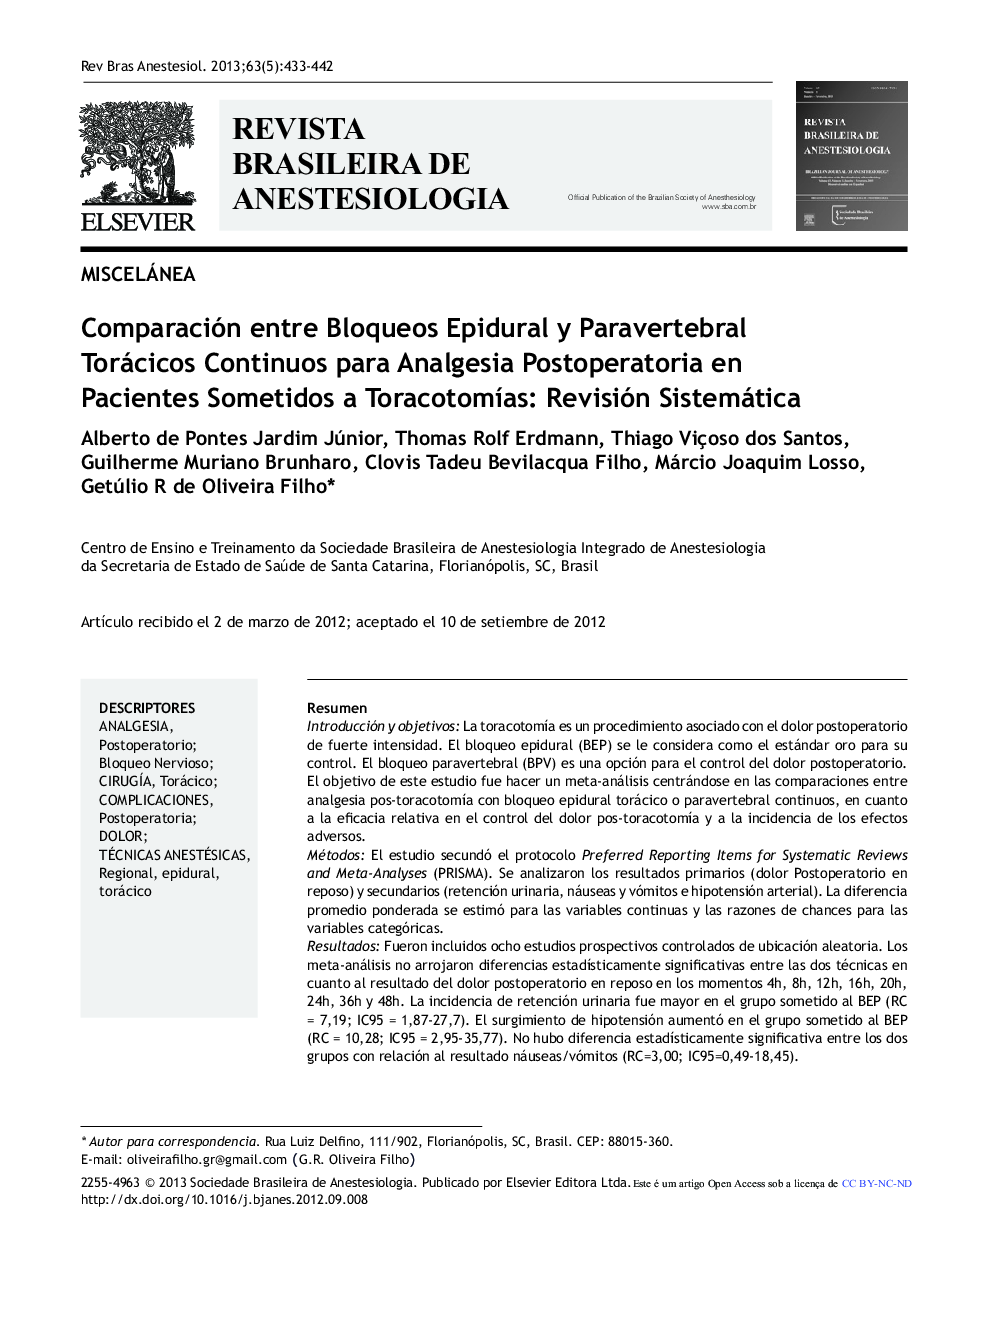 Comparación entre Bloqueos Epidural y Paravertebral Torácicos Continuos para Analgesia Postoperatoria en Pacientes Sometidos a Toracotomías: Revisión Sistemática